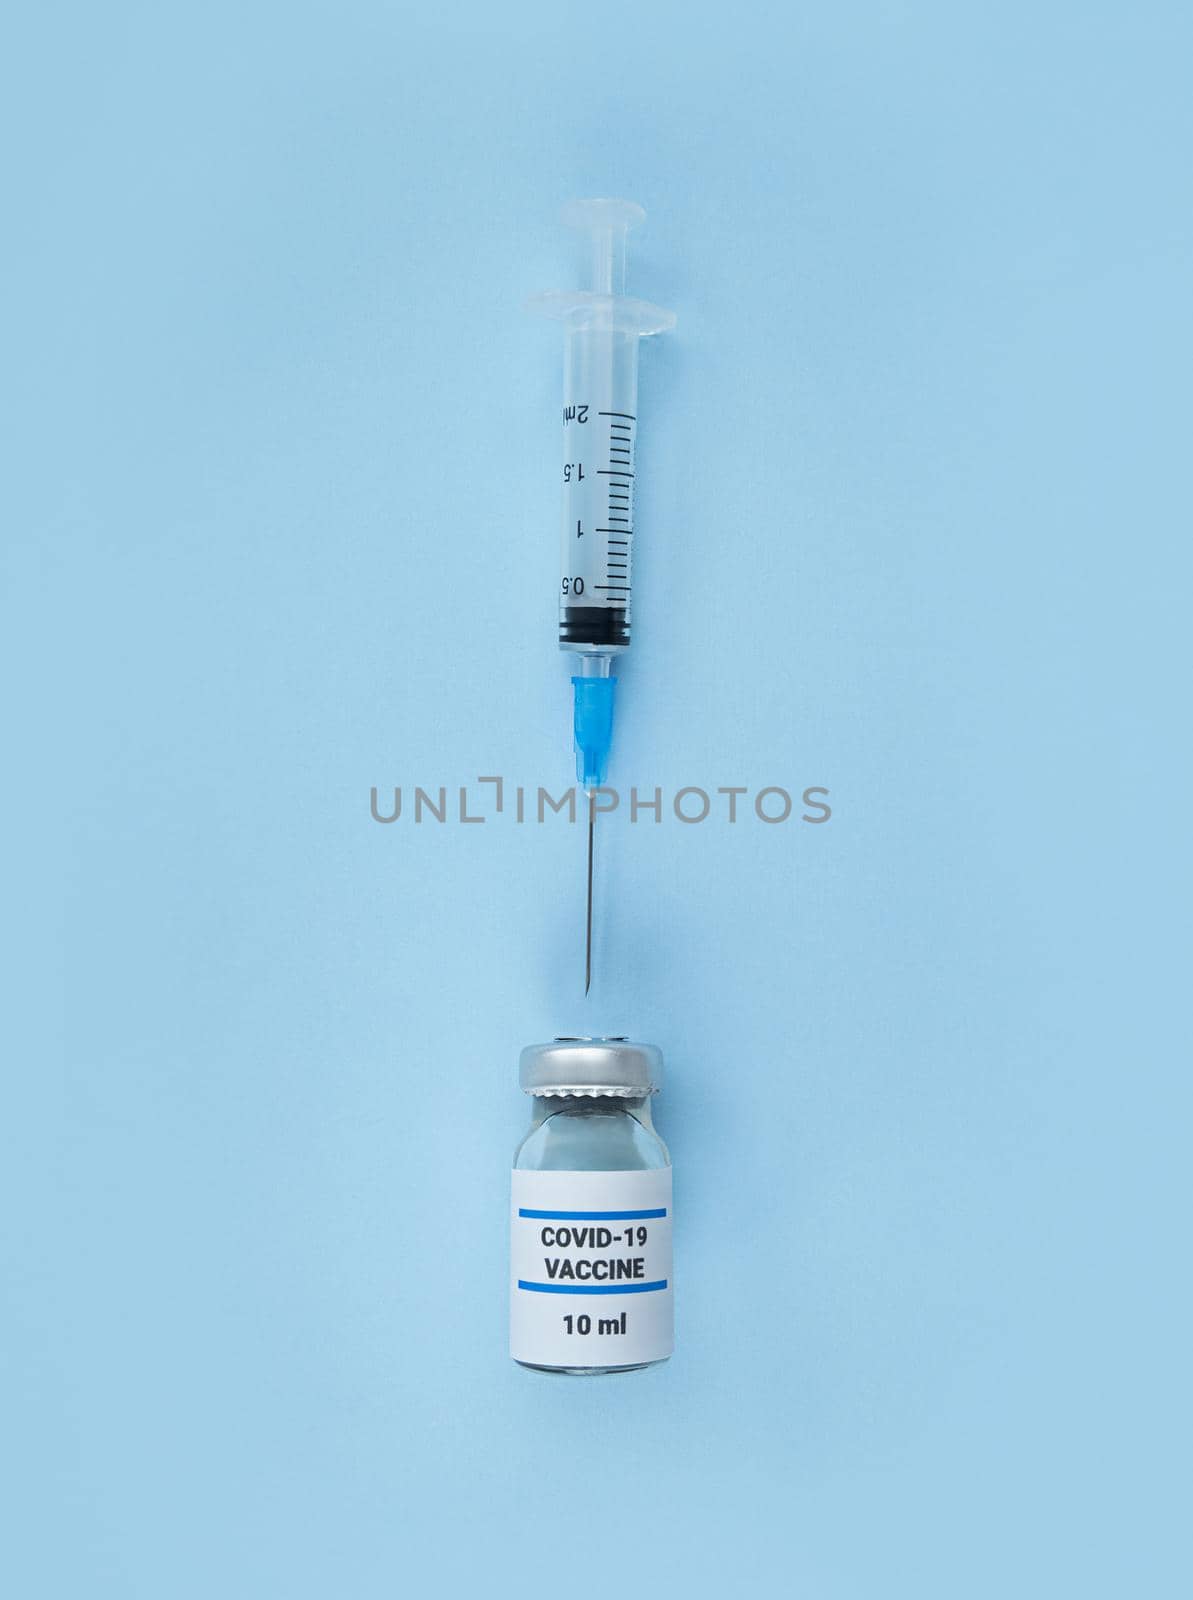 Single use syringe and medical bottle with coronavirus vaccine on a blue background.